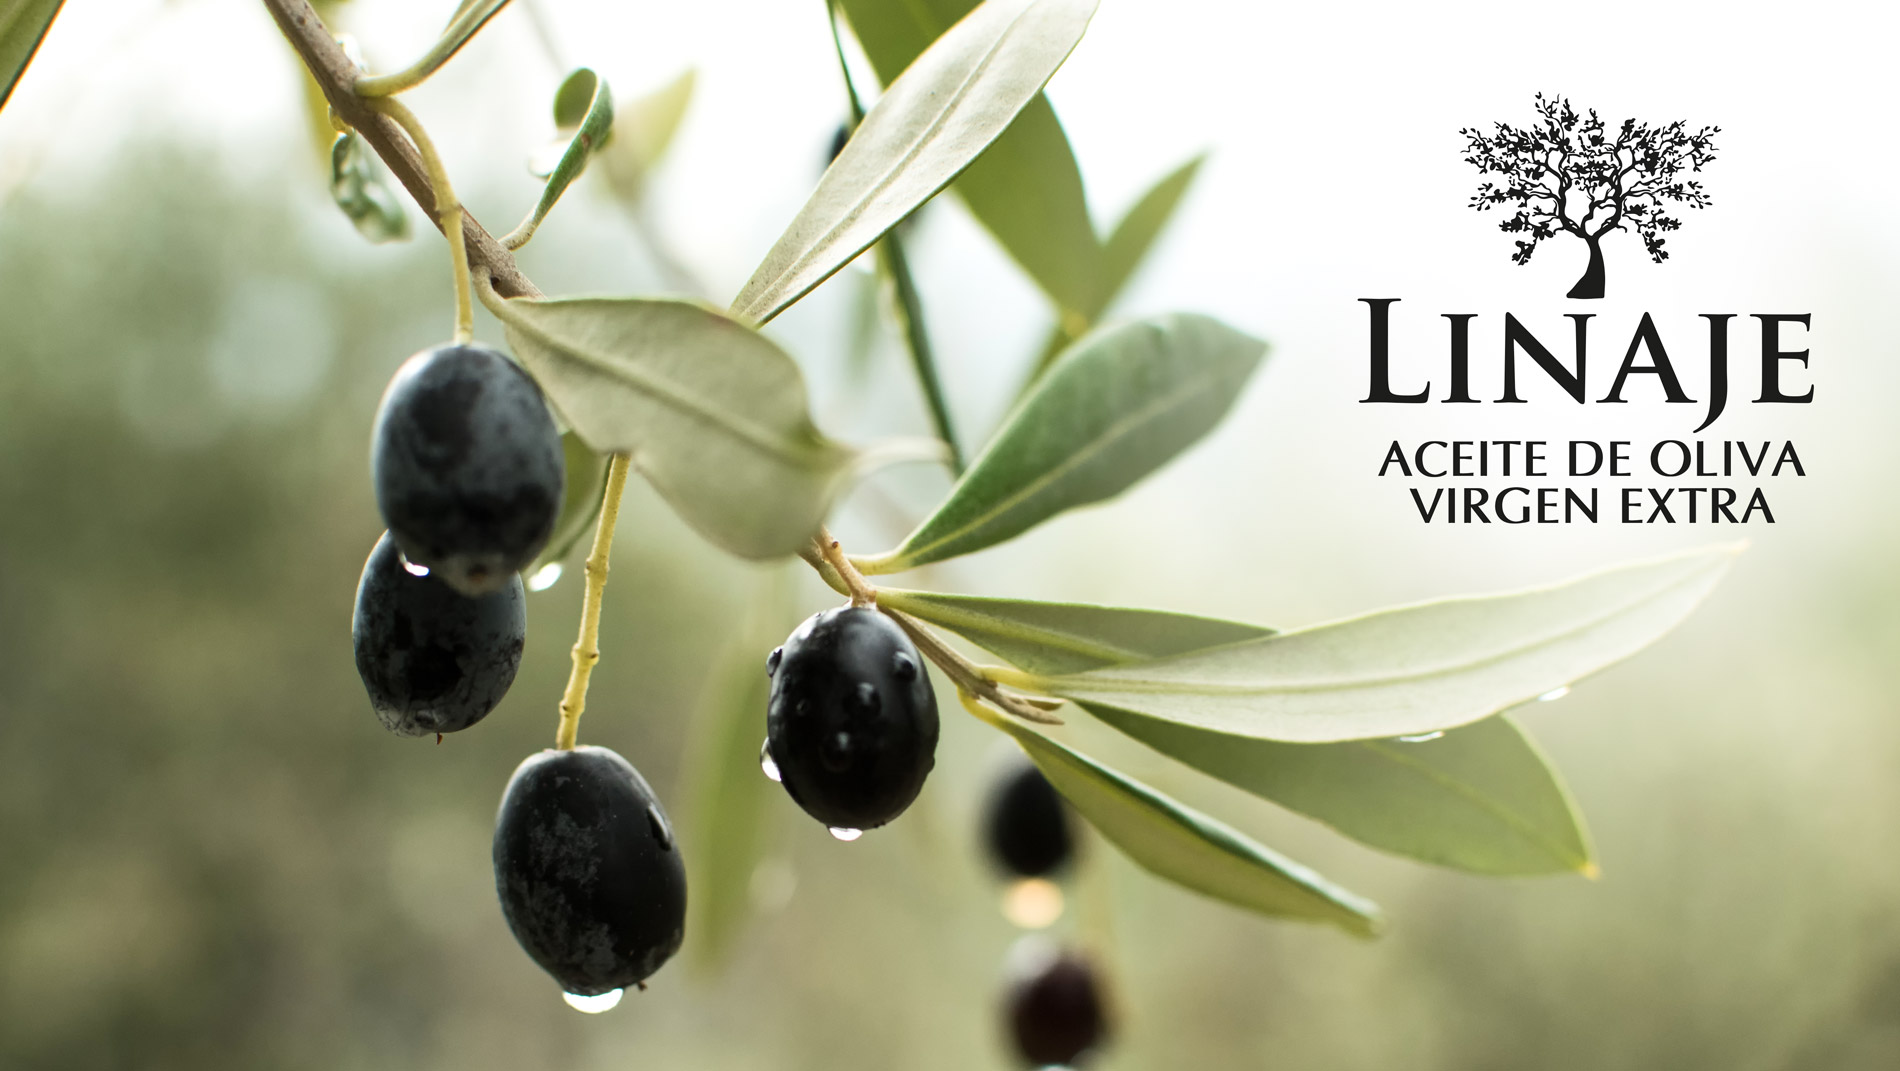 Diseño gráfico y creativo de etiquetas de aceite de oliva virgen extra para la marca Linaje